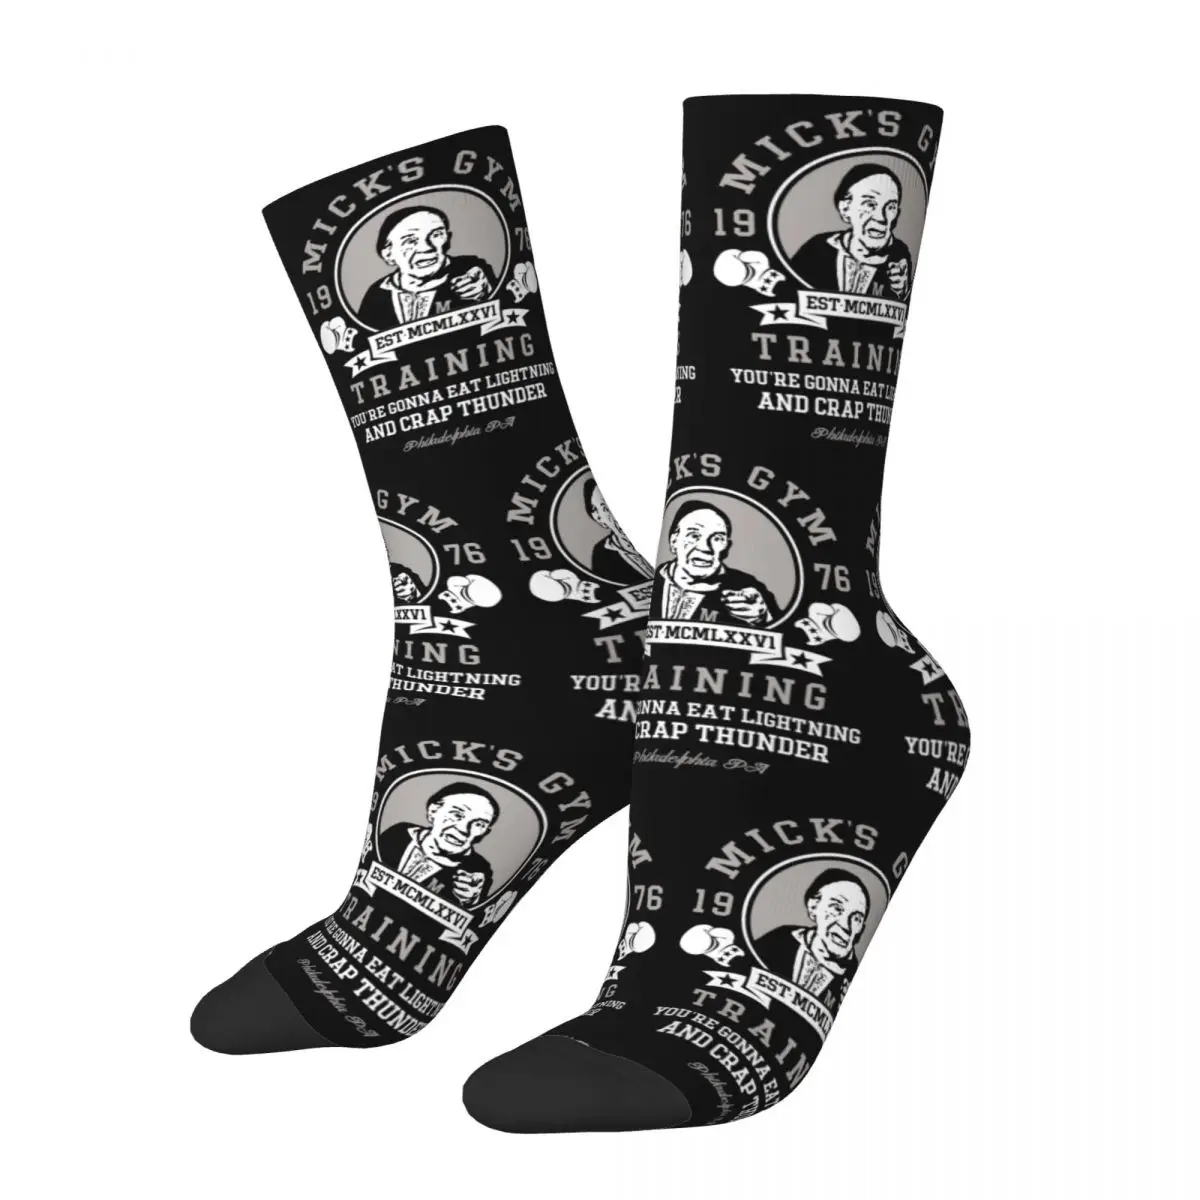 

Носки Rocky Film Mick's Gym Merch, уютные высококачественные длинные носки, милые для женщин и мужчин, идея для подарка на день рождения